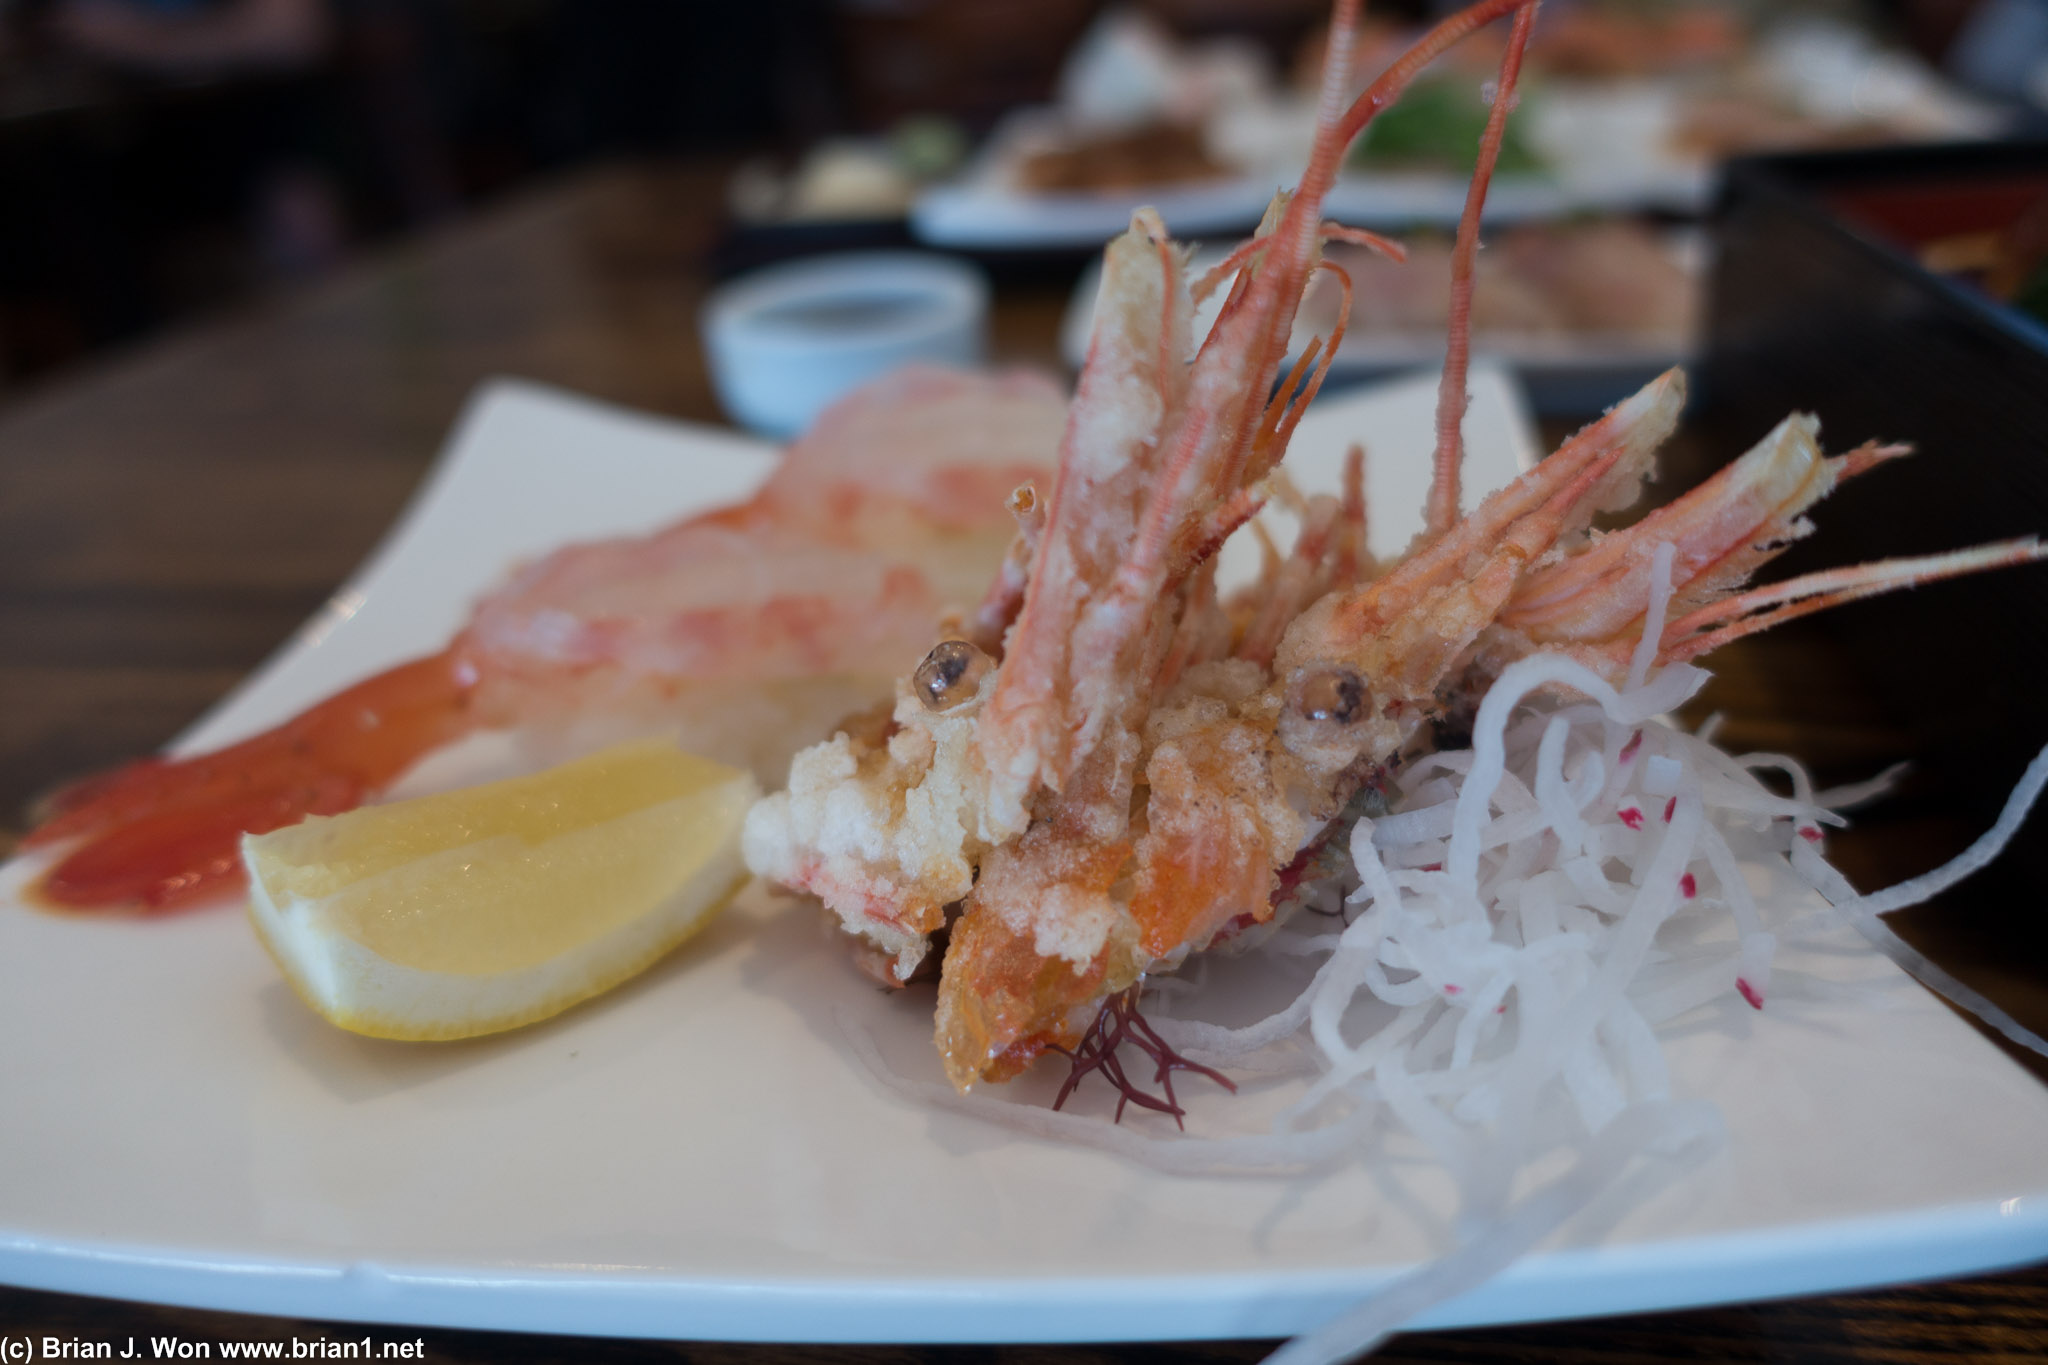 Live sweet shrimp- ama ebi-- was pretty decent. And those deep fried shrimp heads, MMMM.